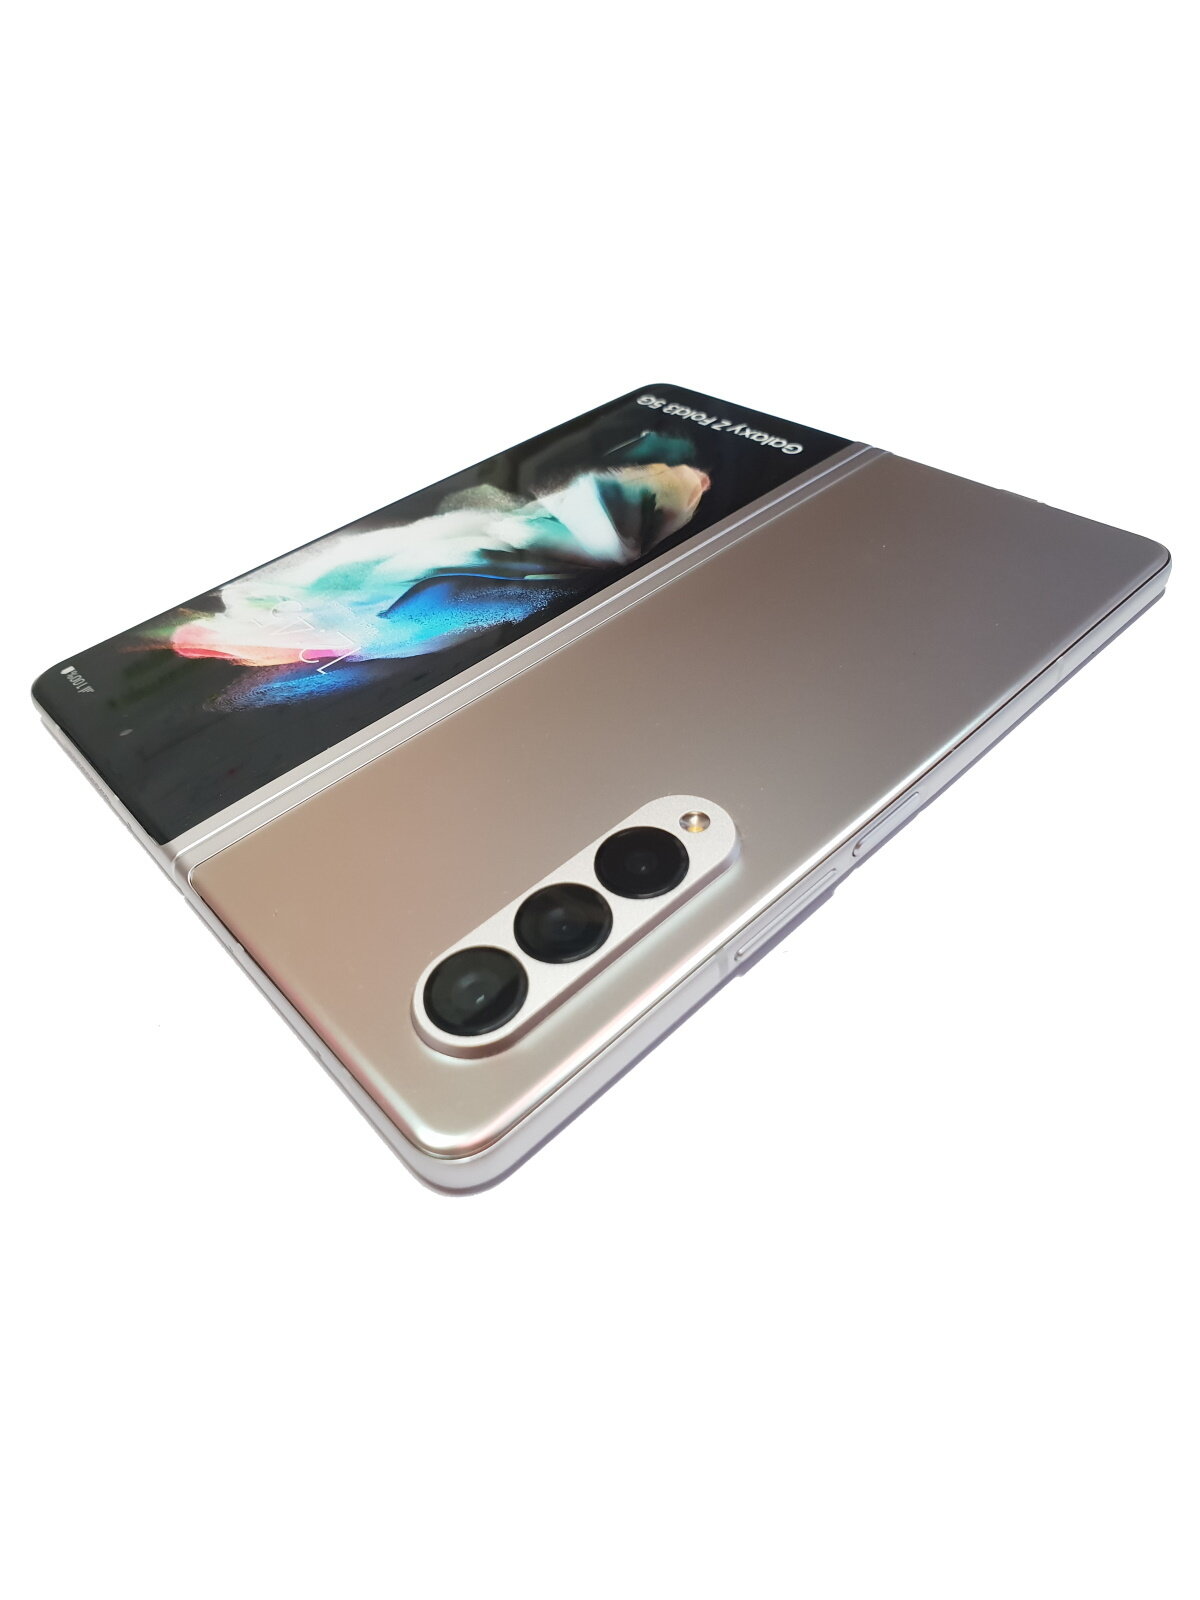 Игрушка телефон-раскладушка Samsung Galaxy Z Fold3 silver 7,6 смартфон игрушка для девочки SM-F926B игровой телефон не музыкальный статичный Z Fold 3